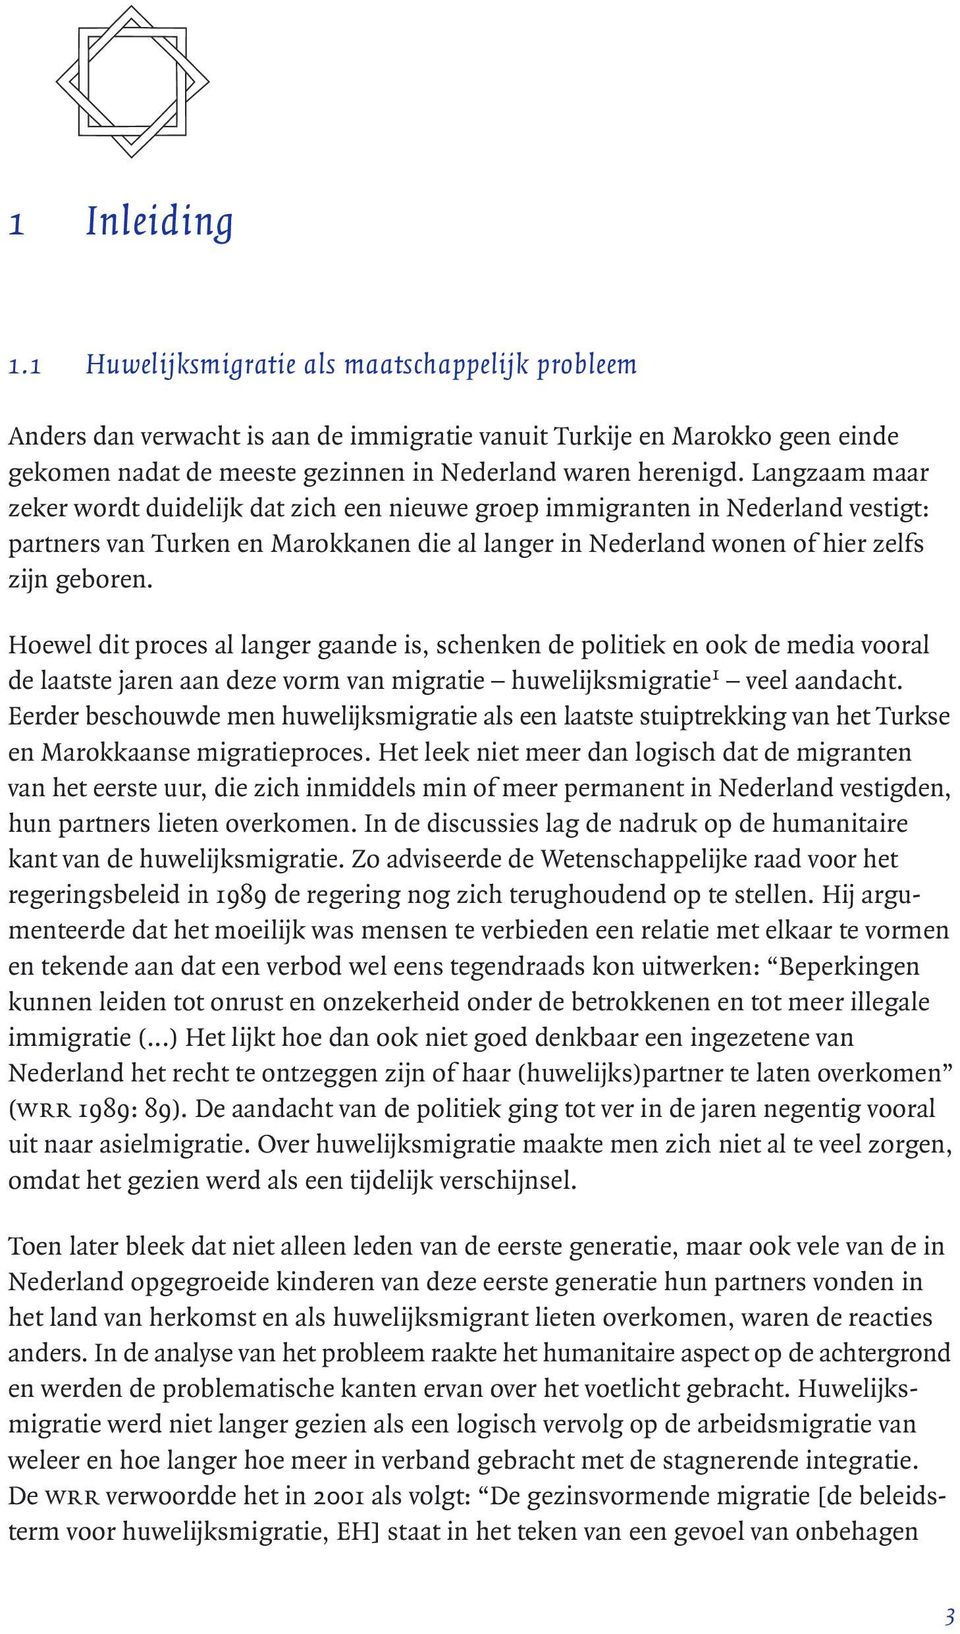 Langzaam maar zeker wordt duidelijk dat zich een nieuwe groep immigranten in Nederland vestigt: partners van Turken en Marokkanen die al langer in Nederland wonen of hier zelfs zijn geboren.